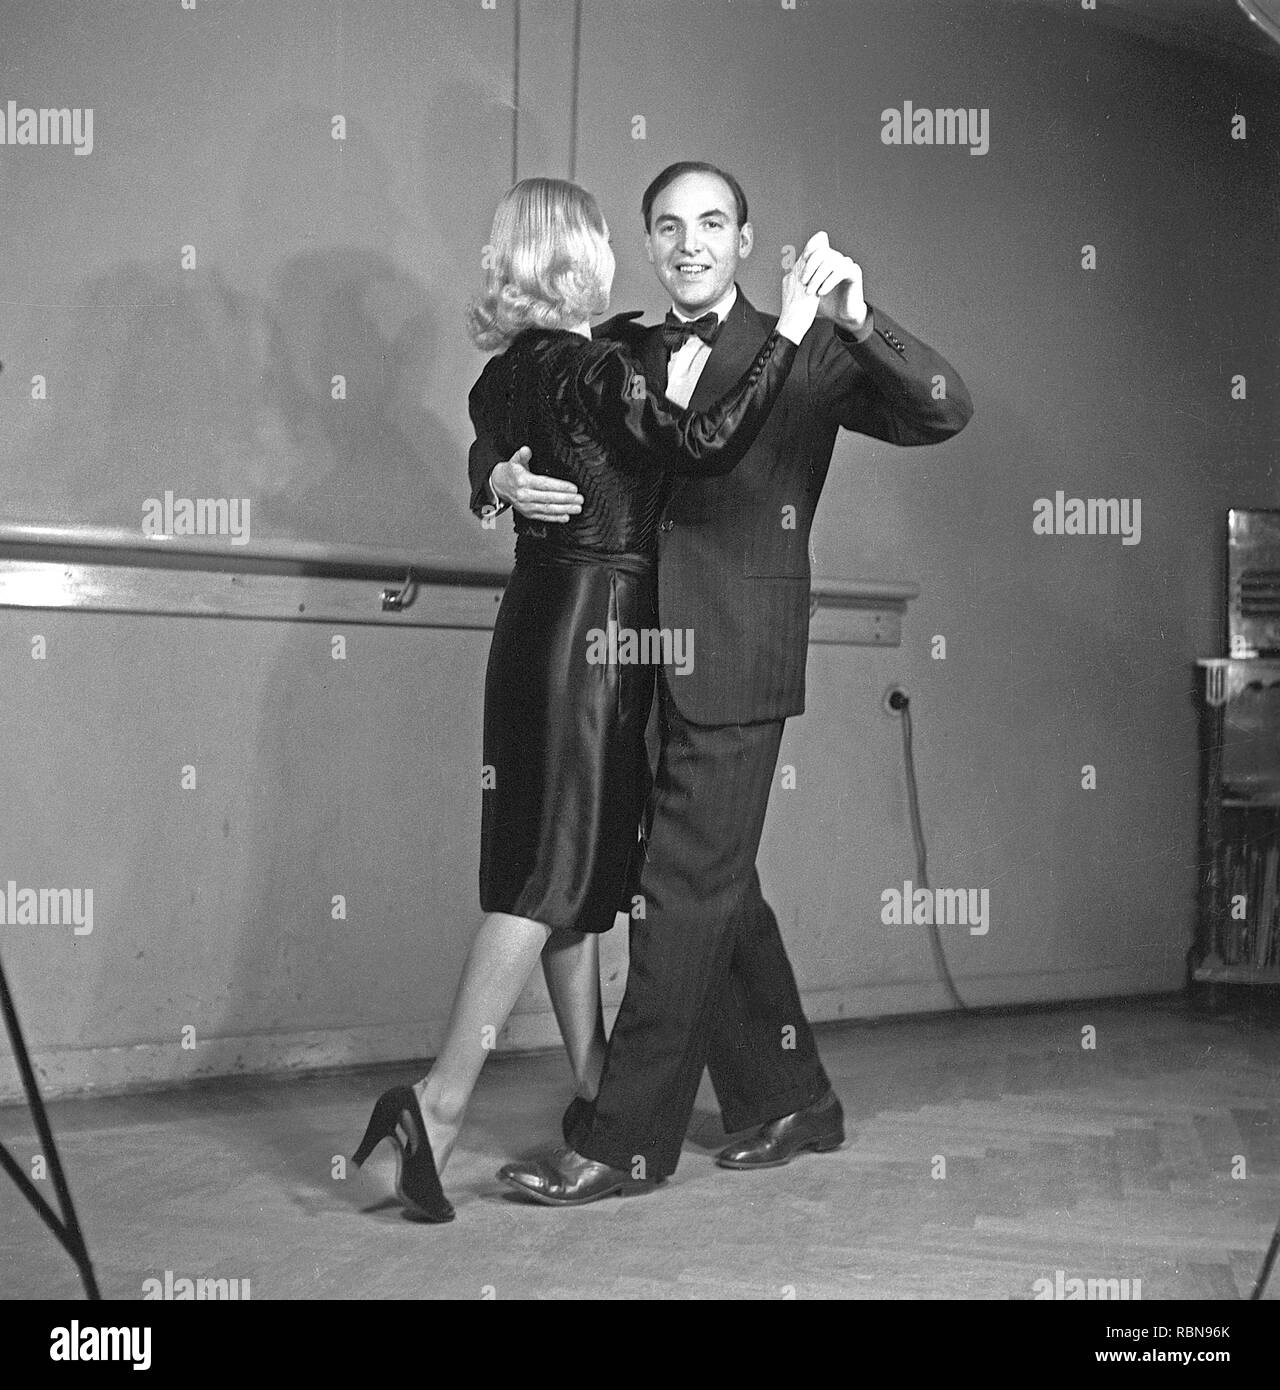 La danse dans les années 40. Couple de danseurs dans les années 40. L'élégant couple forment leurs pas de danse dans une école de danse. Kristoffersson Photo Ref B3-3. Suède 1943 Banque D'Images